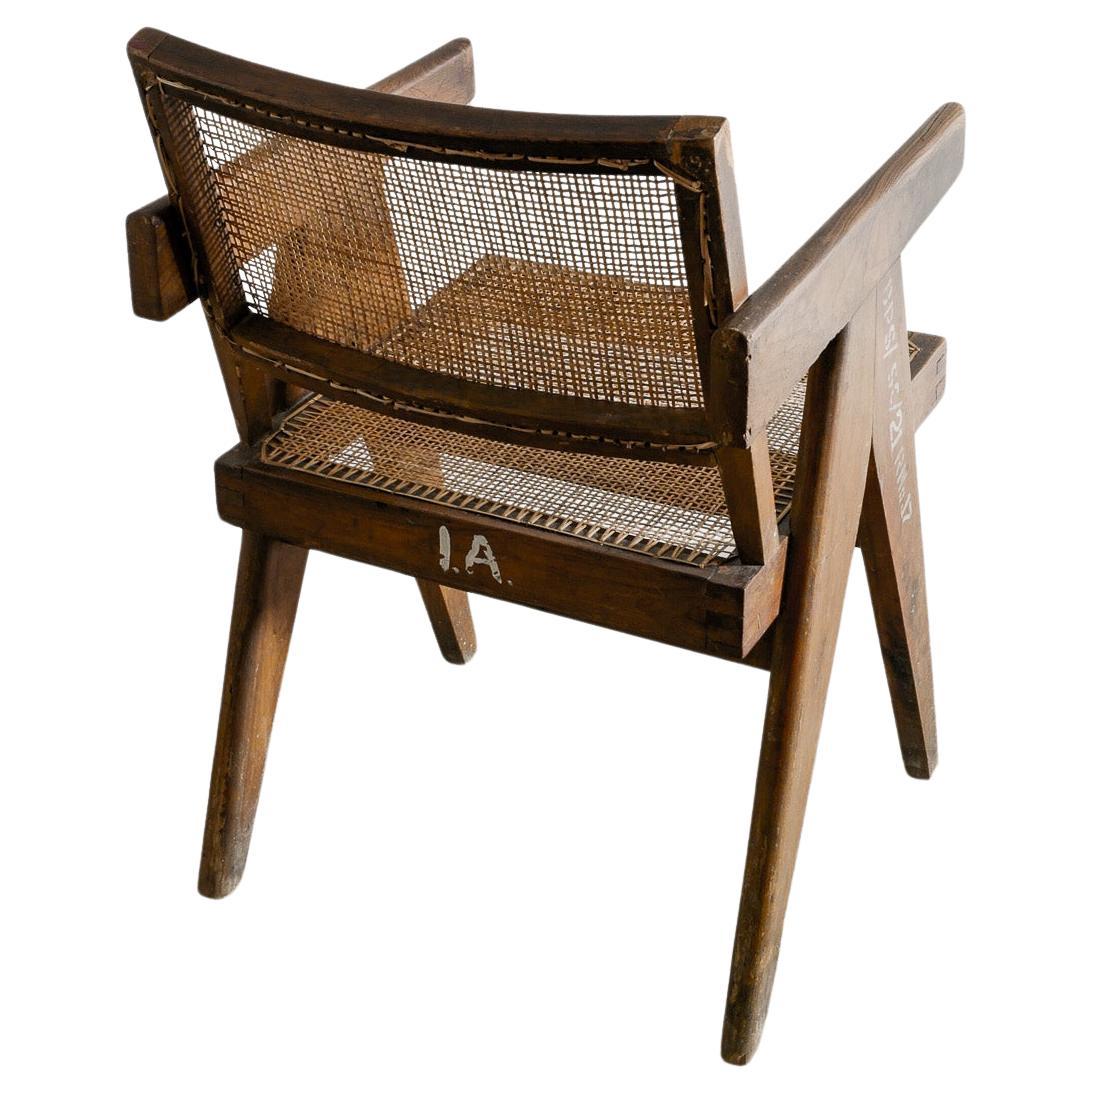 Pierre Jeanneret Chaise de bureau en bois du milieu du siècle en teck et rotin Produit dans les années 1950